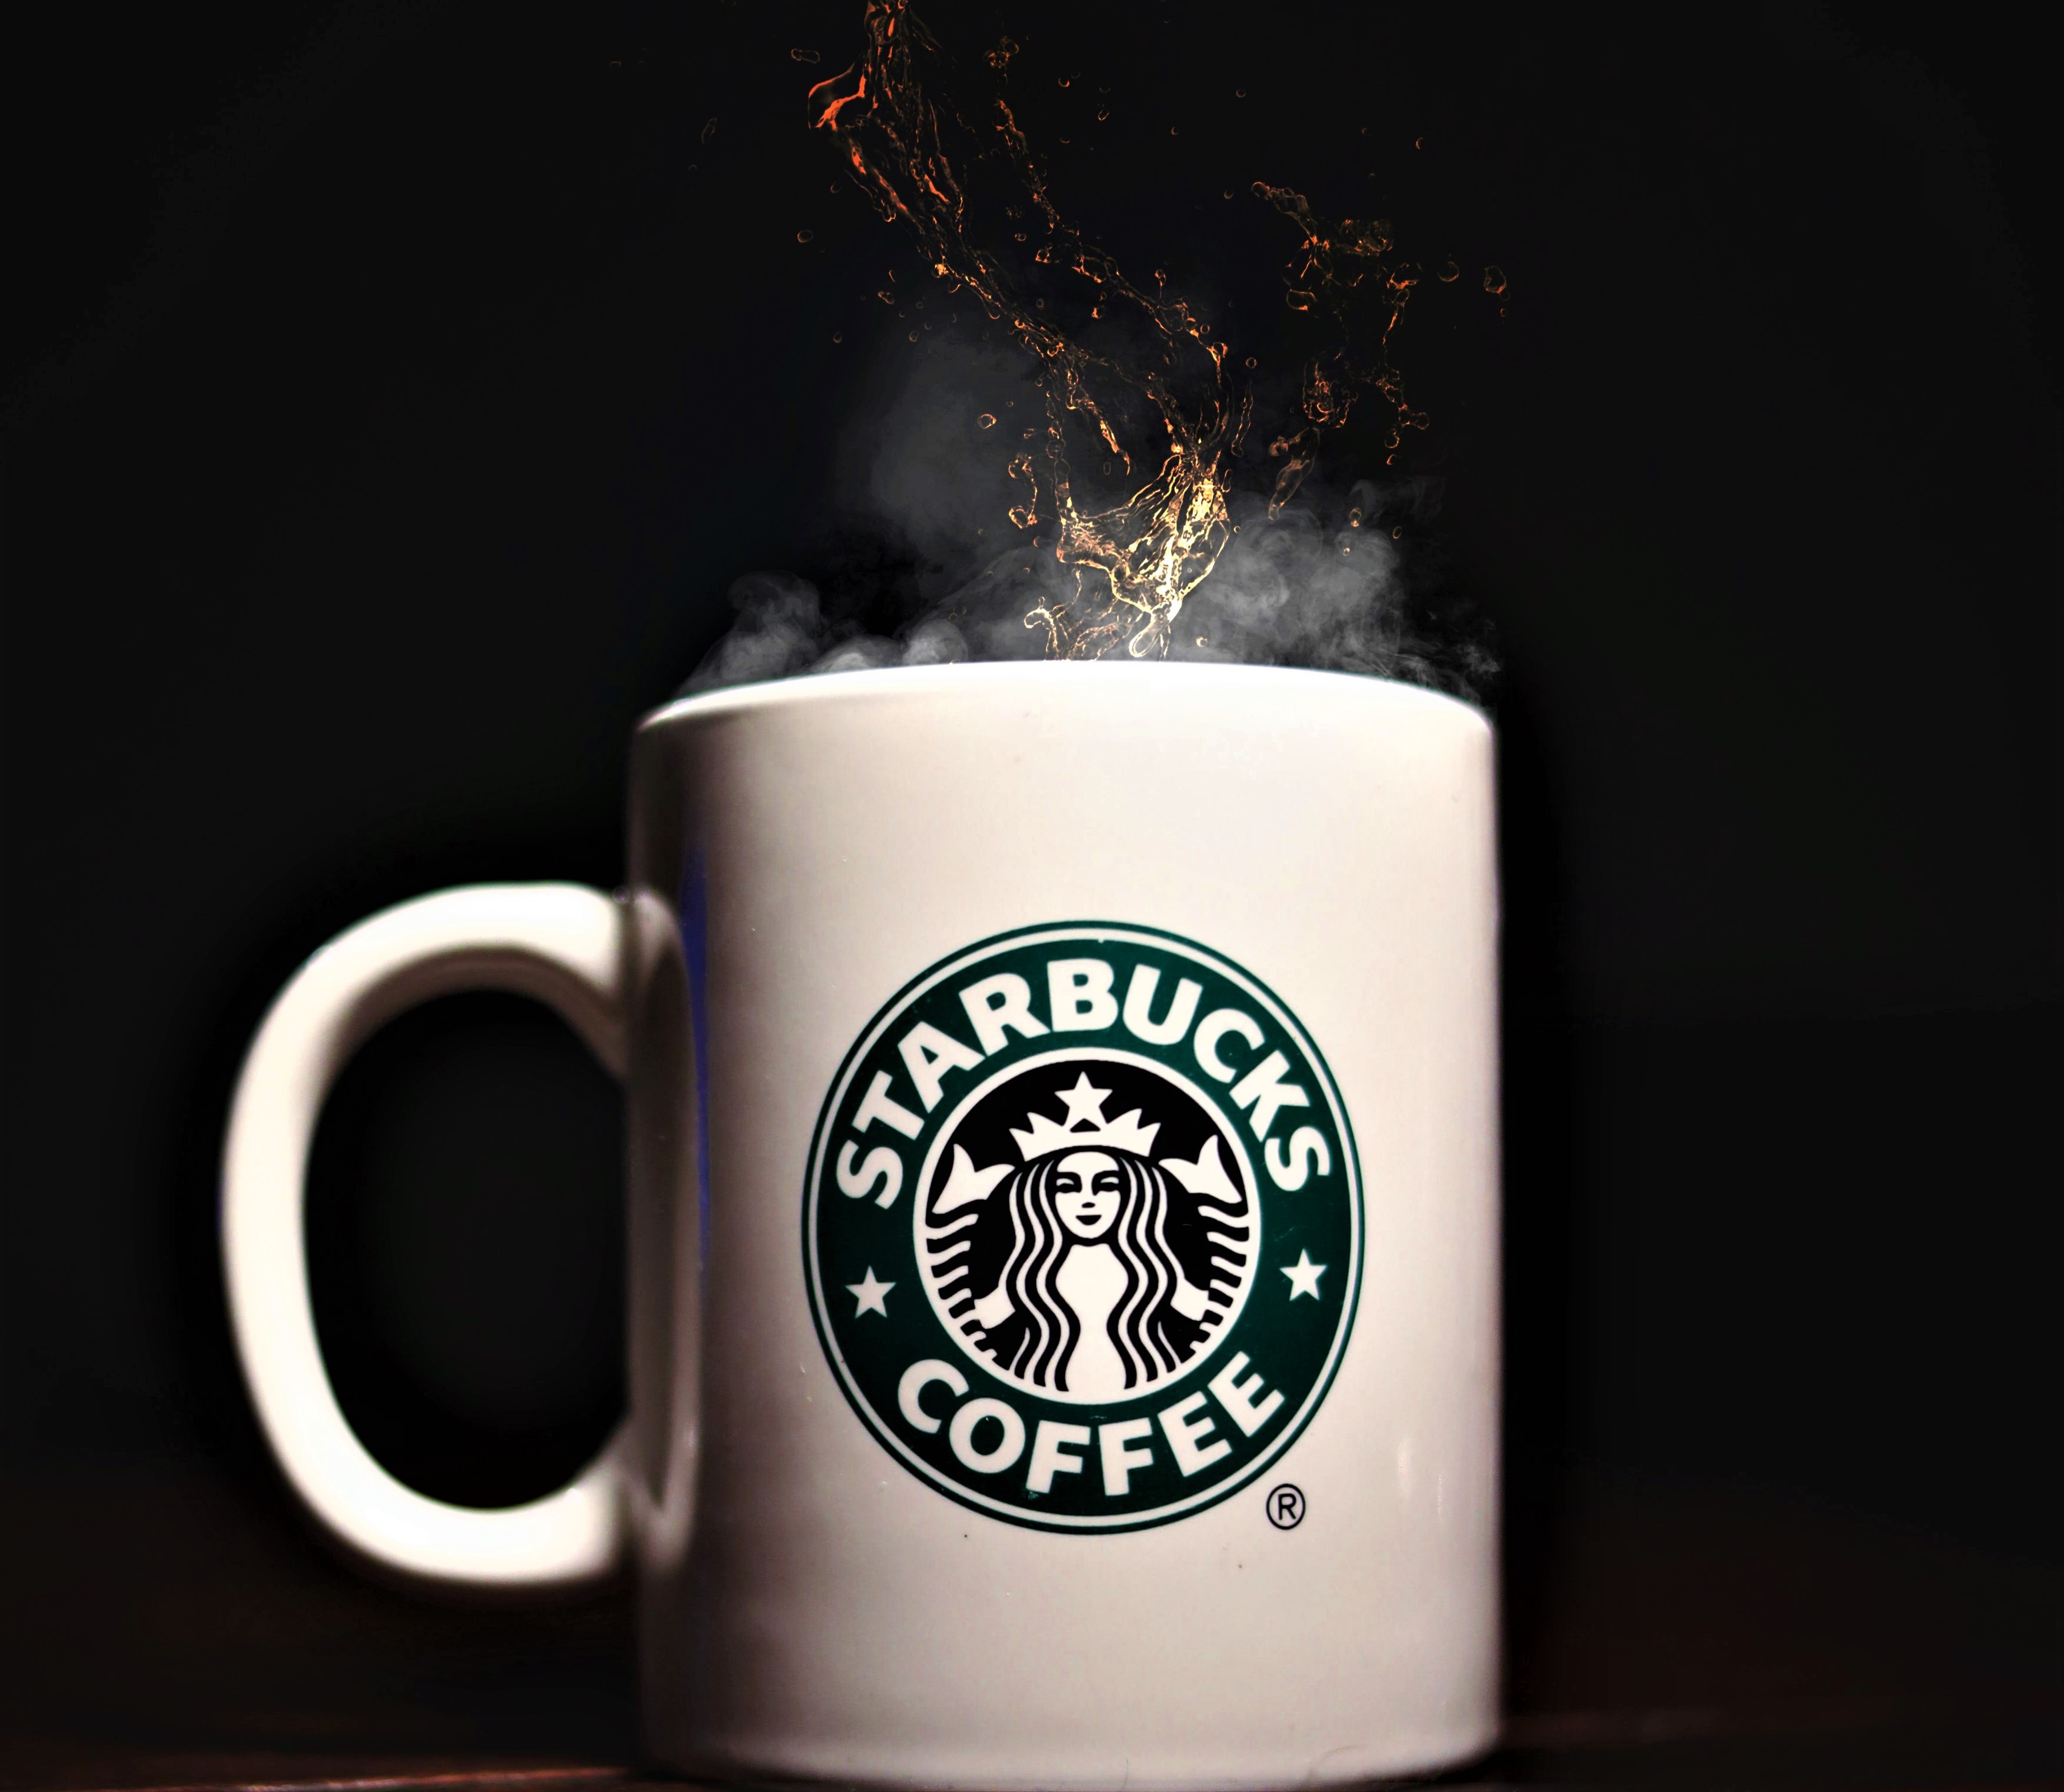 Starbucks stock holds steady despite market sell-off